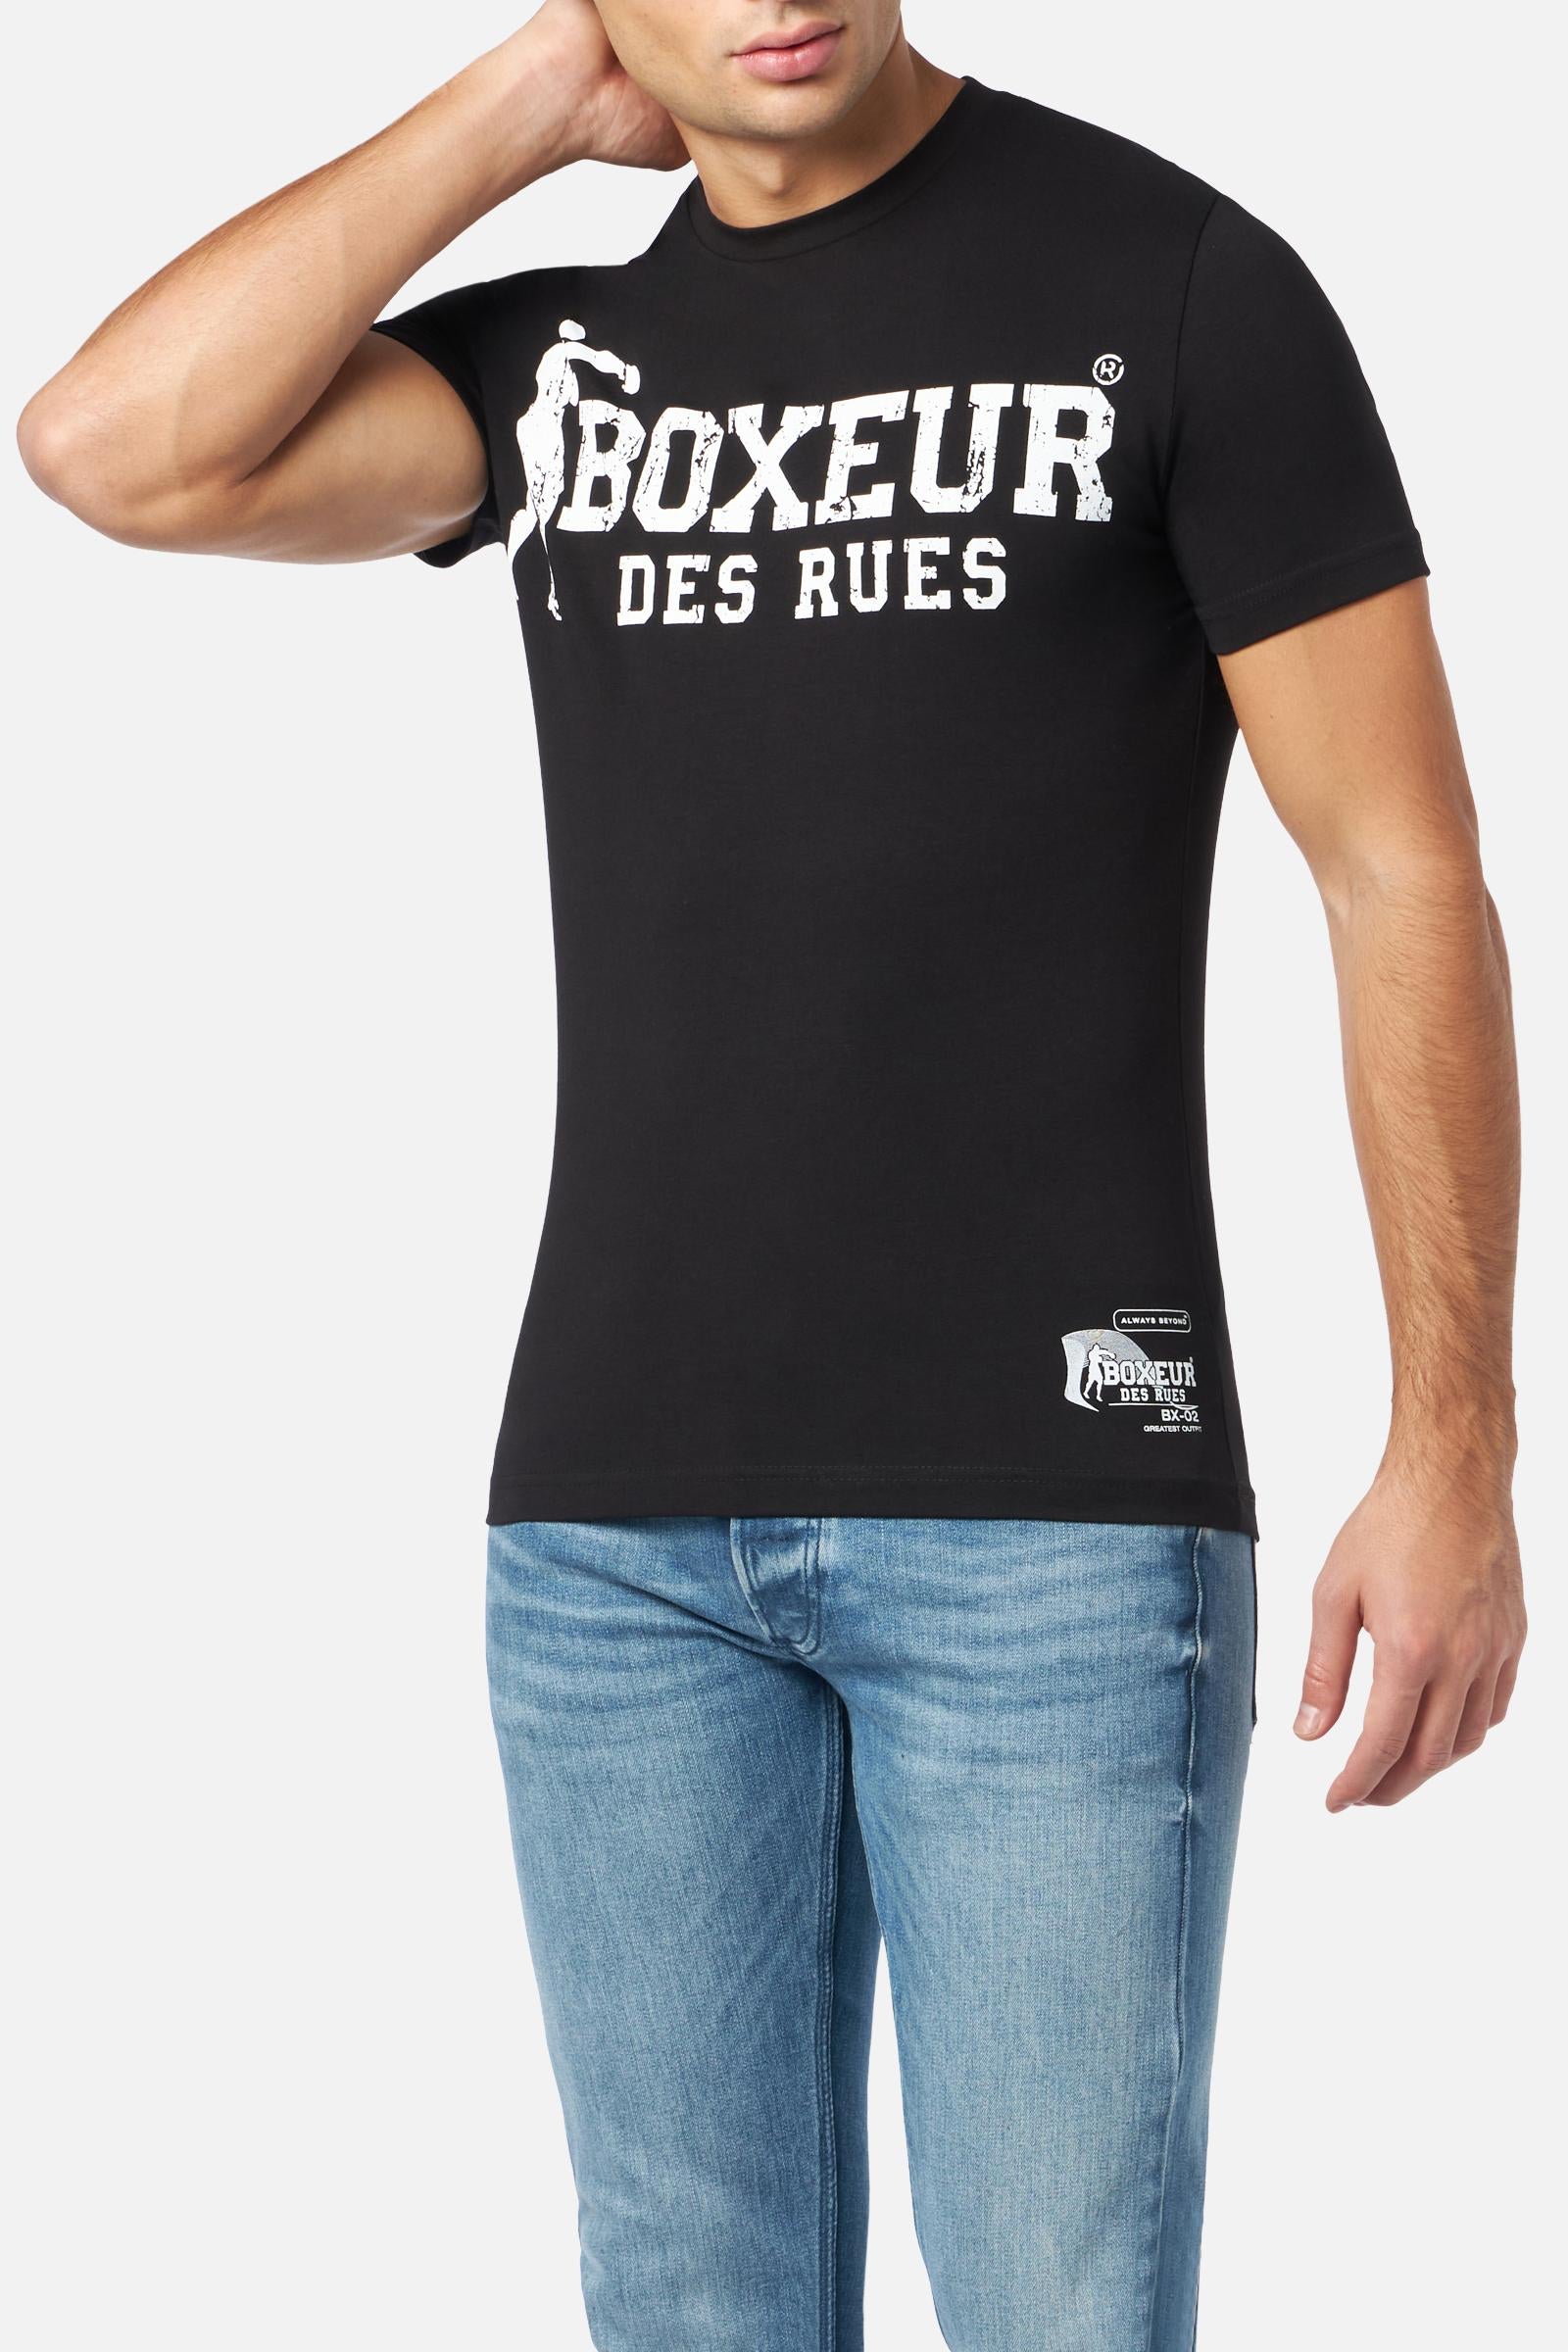 T-Shirt Boxeur Street 2 in Black-White T-Shirts Boxeur des Rues   